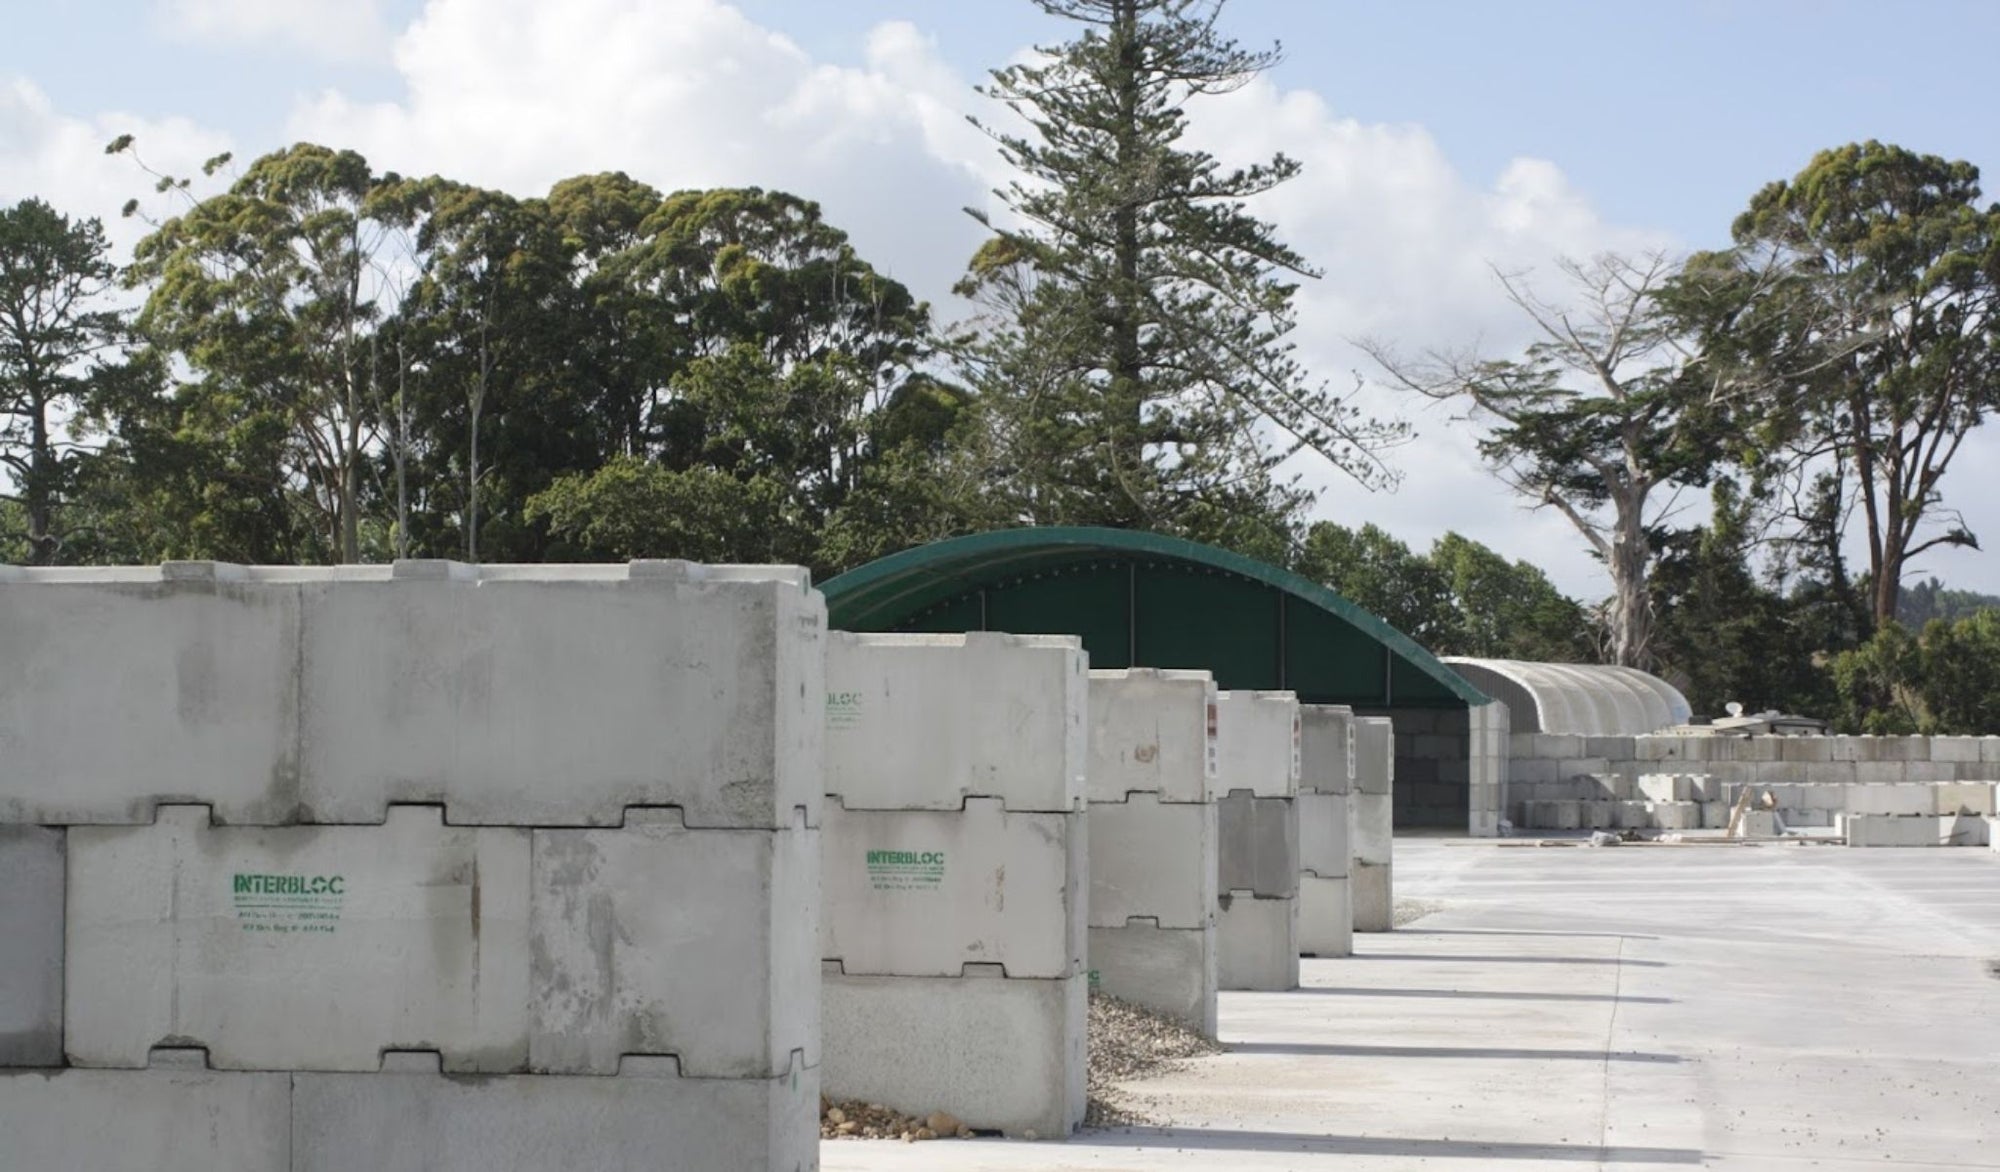 Interbloc gravity concrete bins at Wyatt Landscape Supplies